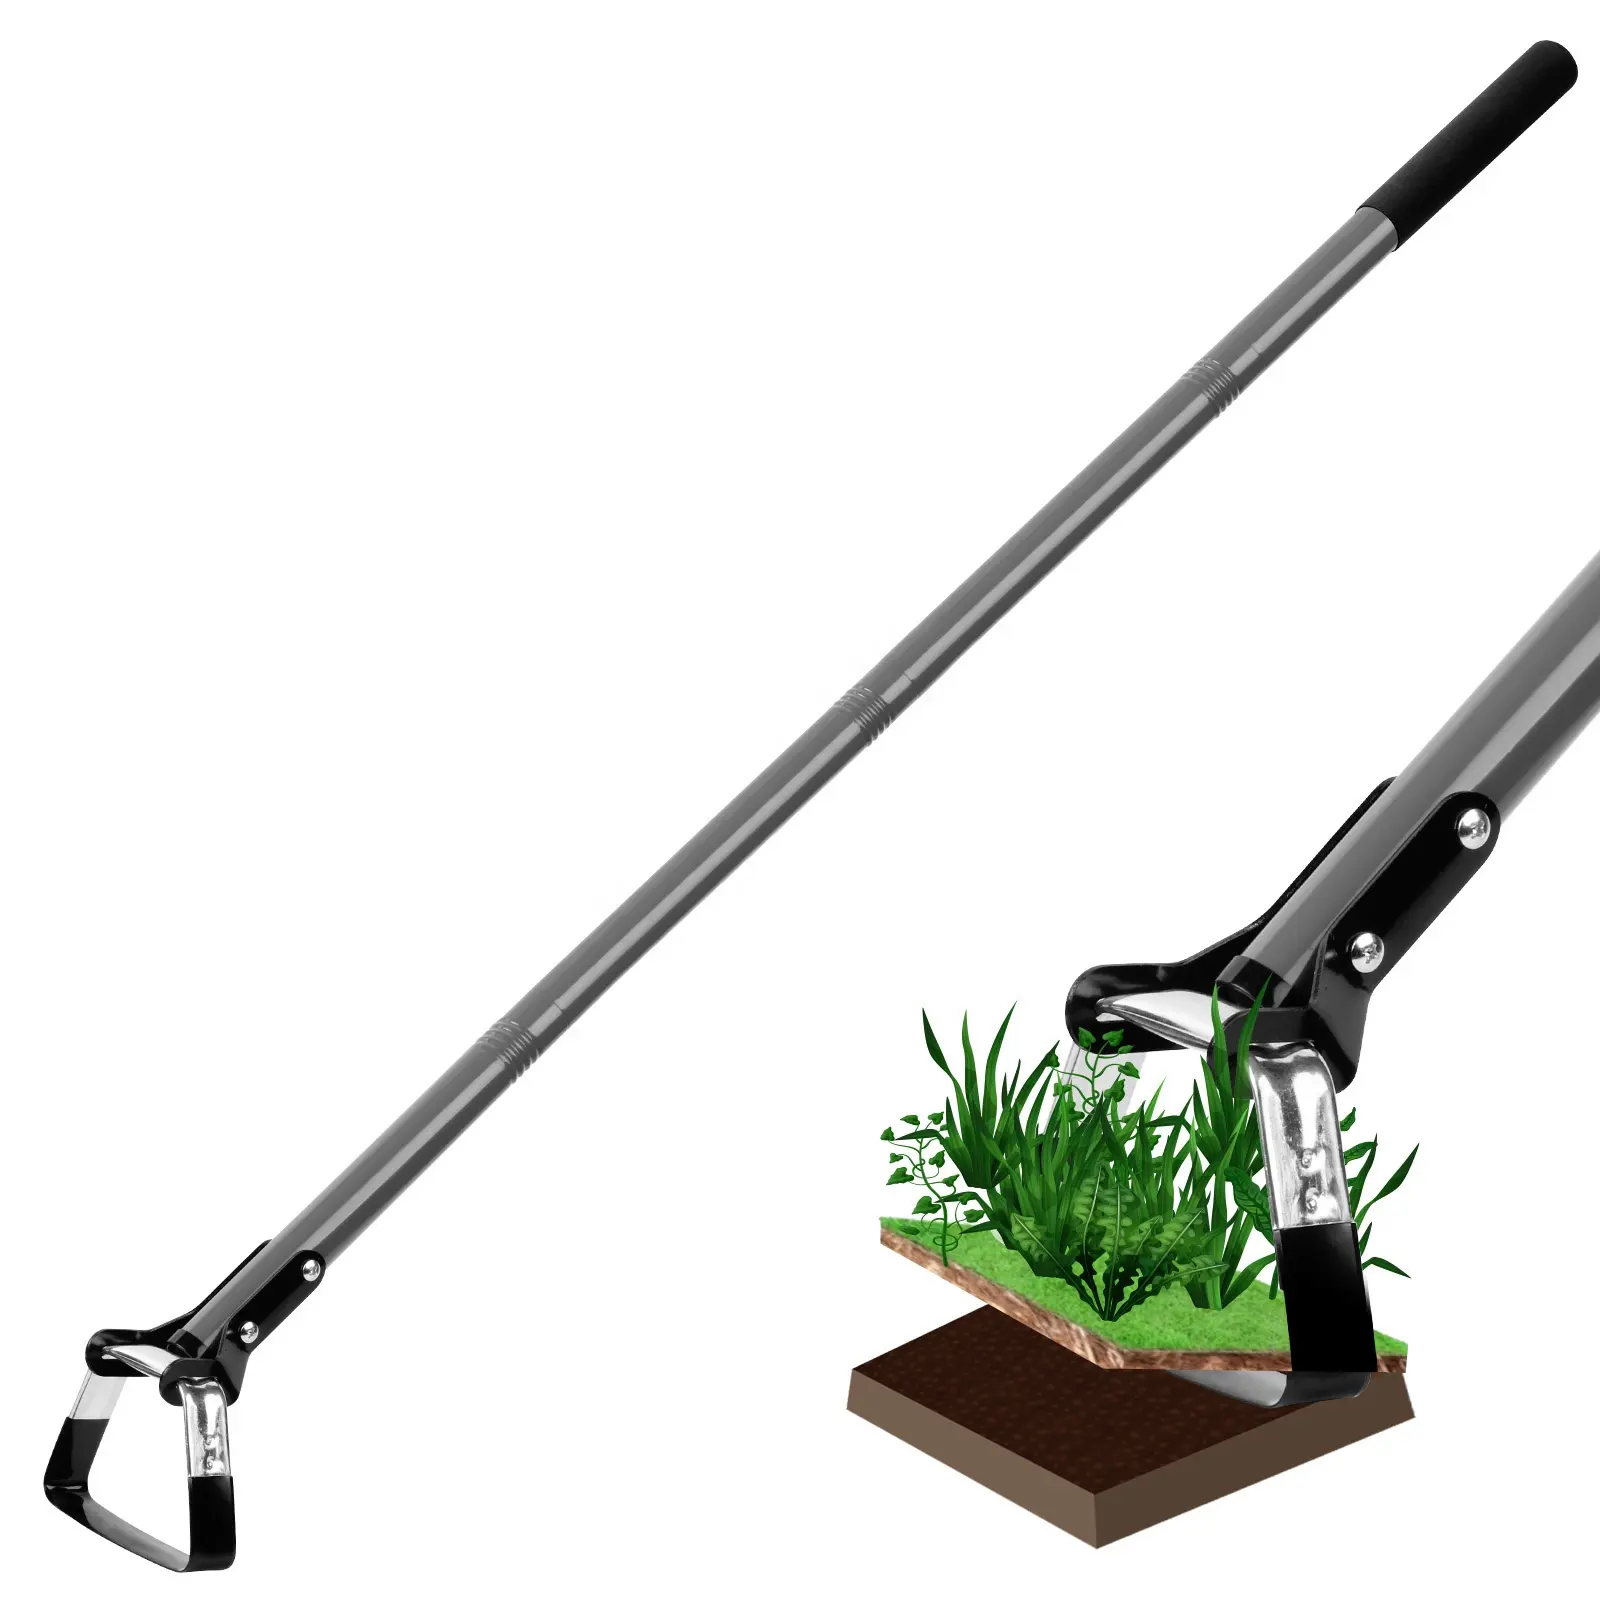 Gartengeräte zum Pflanzen von Zwiebeln Blatt kehrmaschine Rasen be lüfter Garten handwerkzeuge Gartenwerkzeug-Set